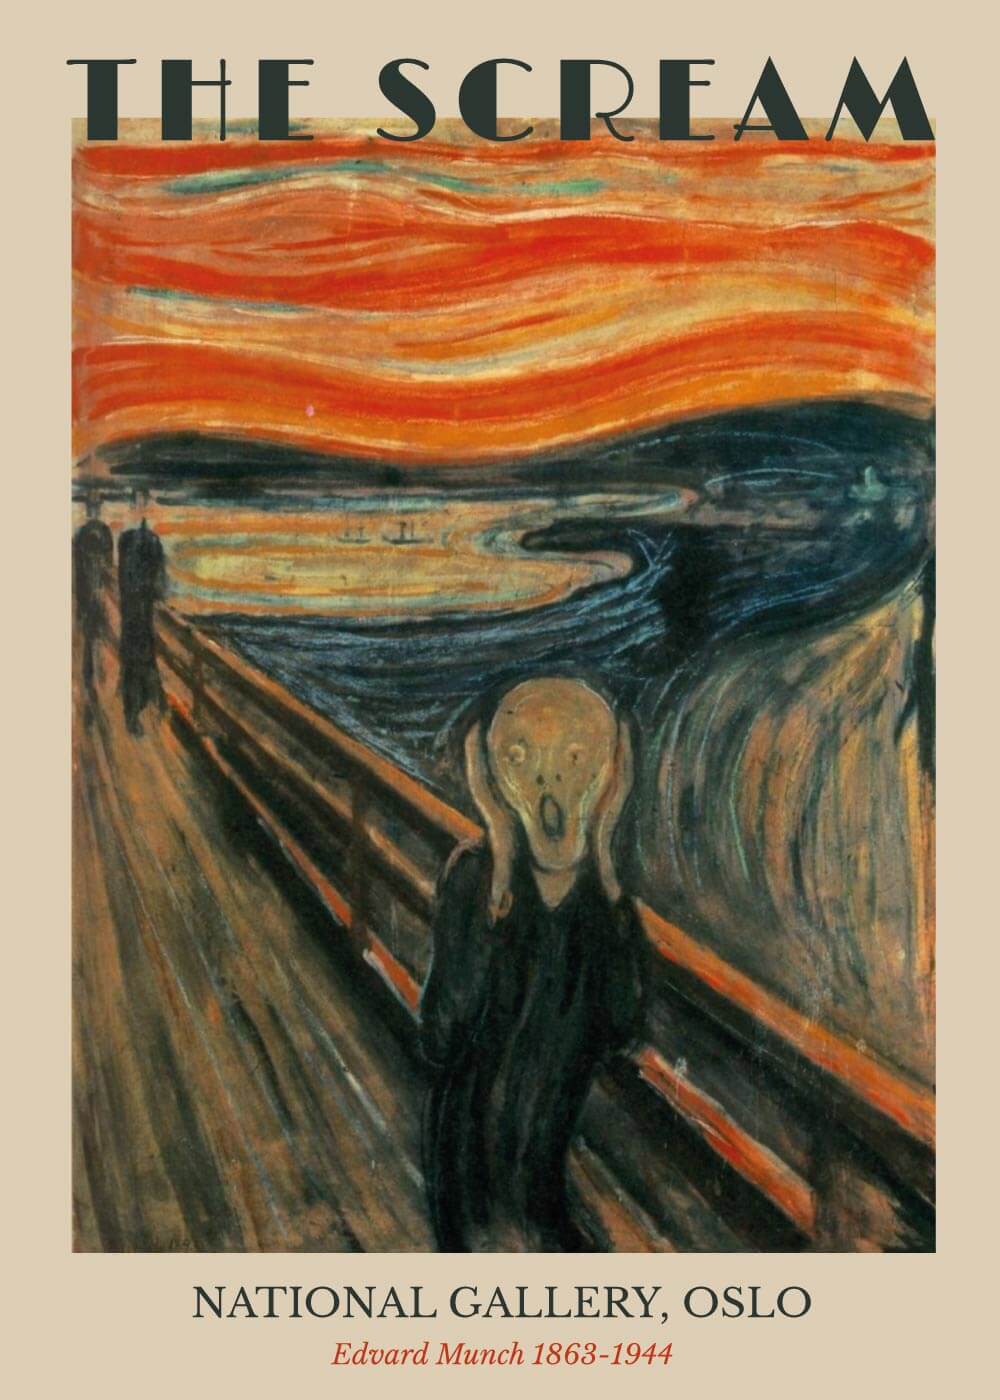 Latter Lil biord The Scream (Skriget) - Edvard Munch | Museums- og kunstplakater